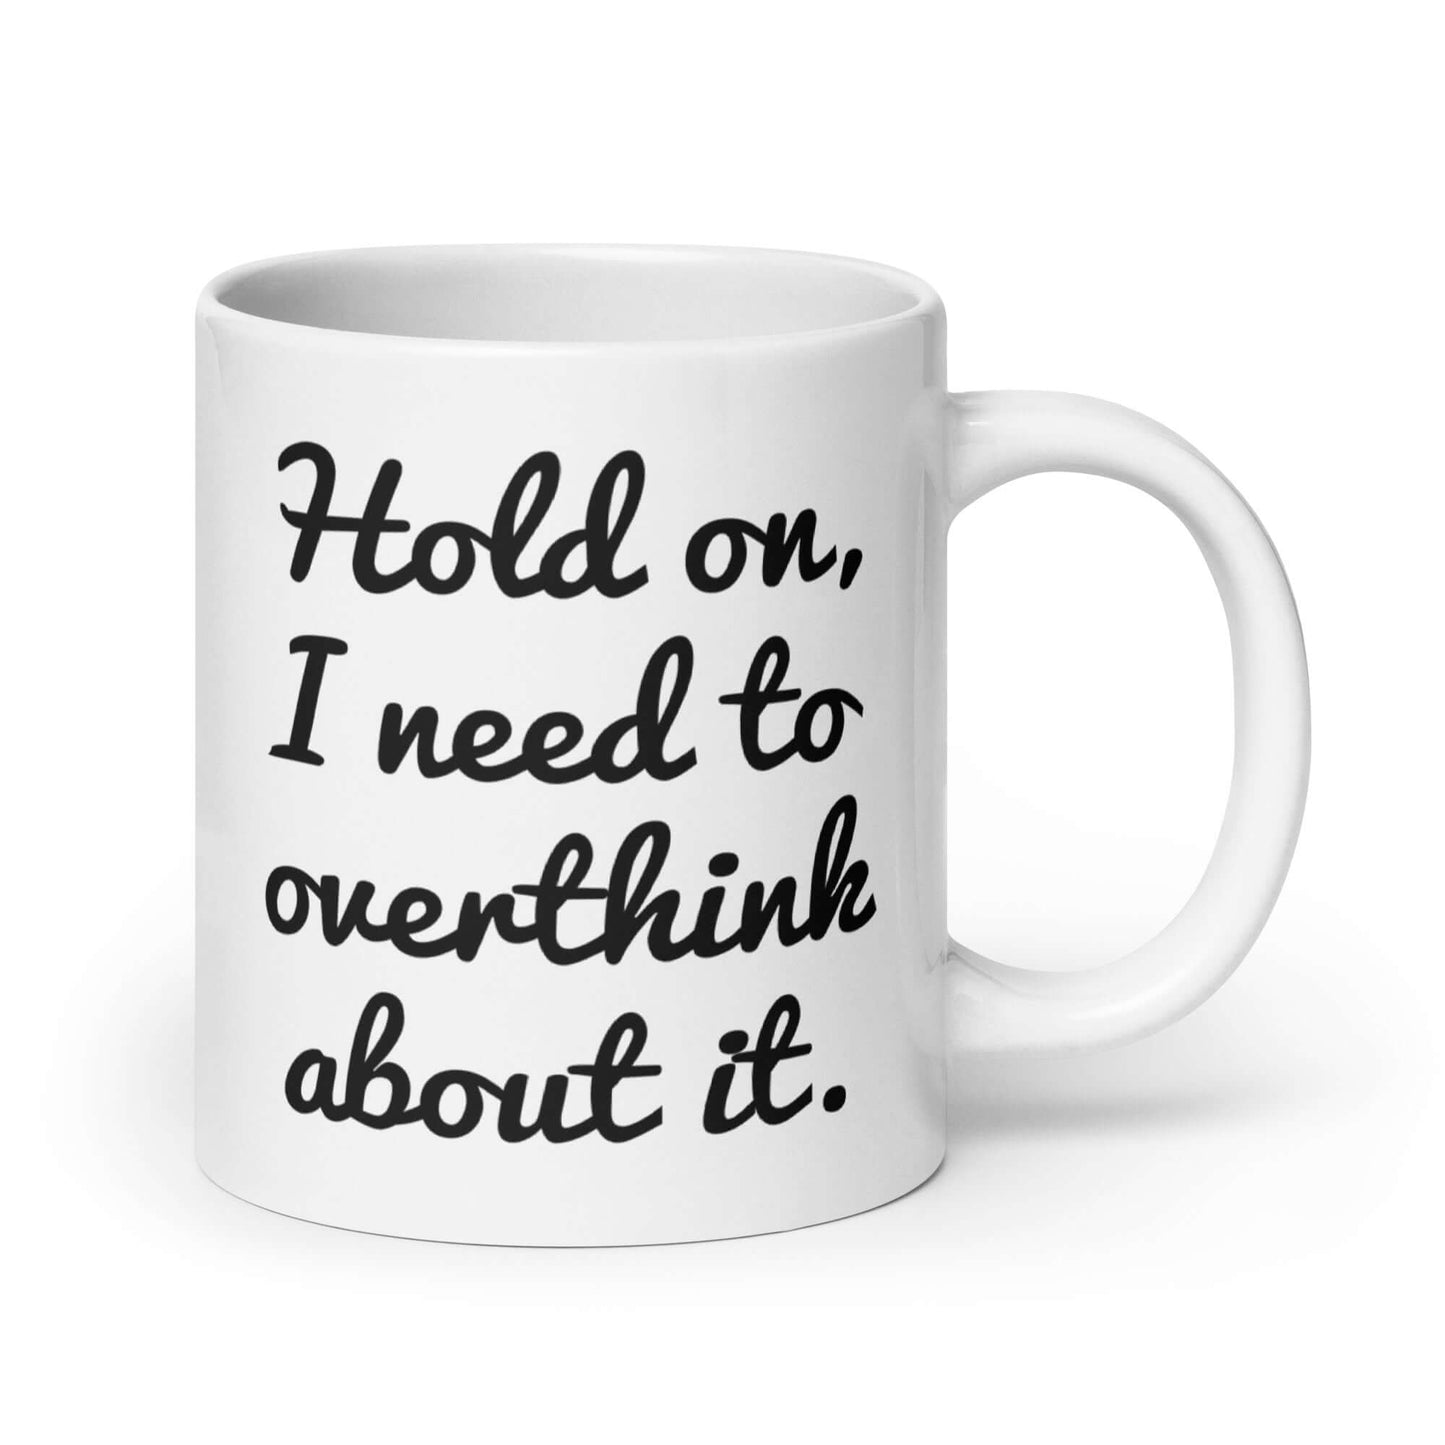 Funny over thinker coffee mug